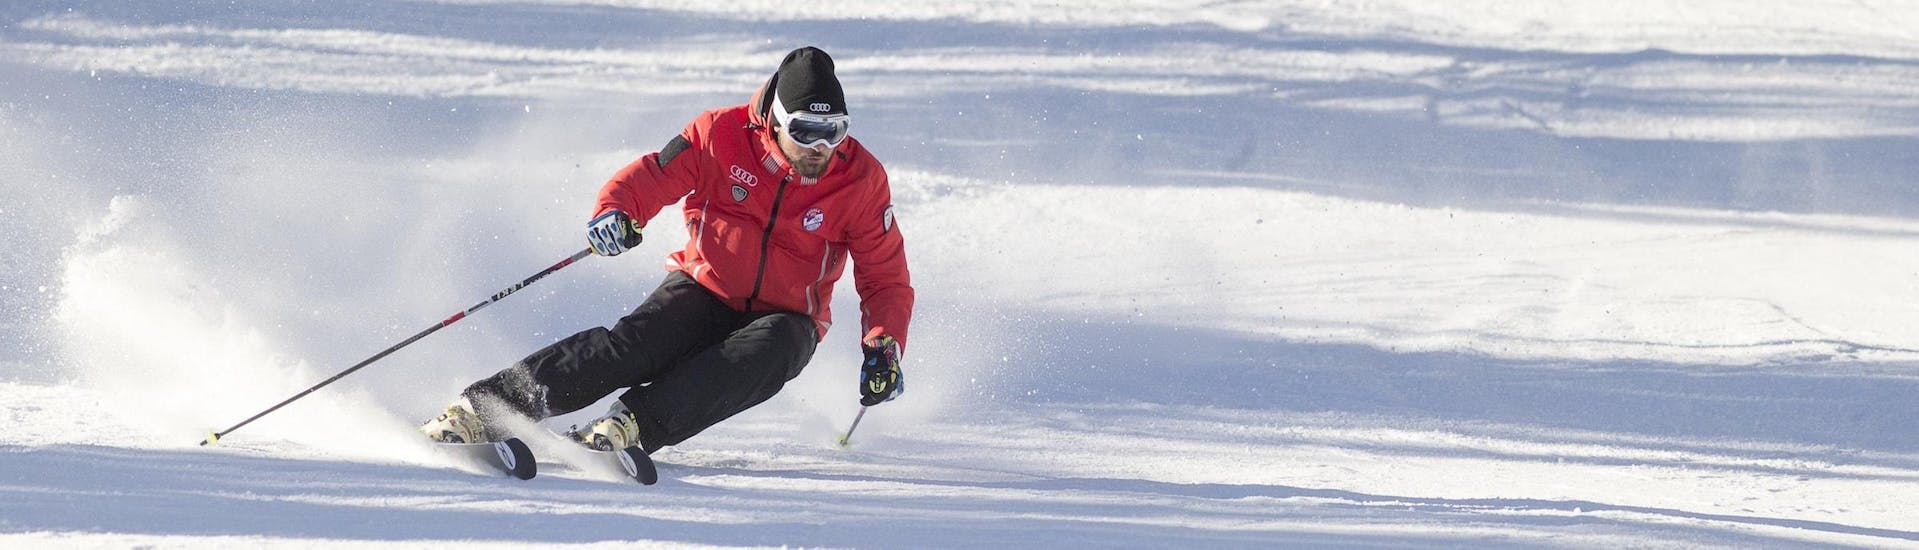 Un moniteur de ski de la Scuola Sci Cortina fait la démonstration de la bonne technique de ski pendant l'un des cours d'initiation au ski pour adultes dans la station de ski de Cortina d'Ampezzo.